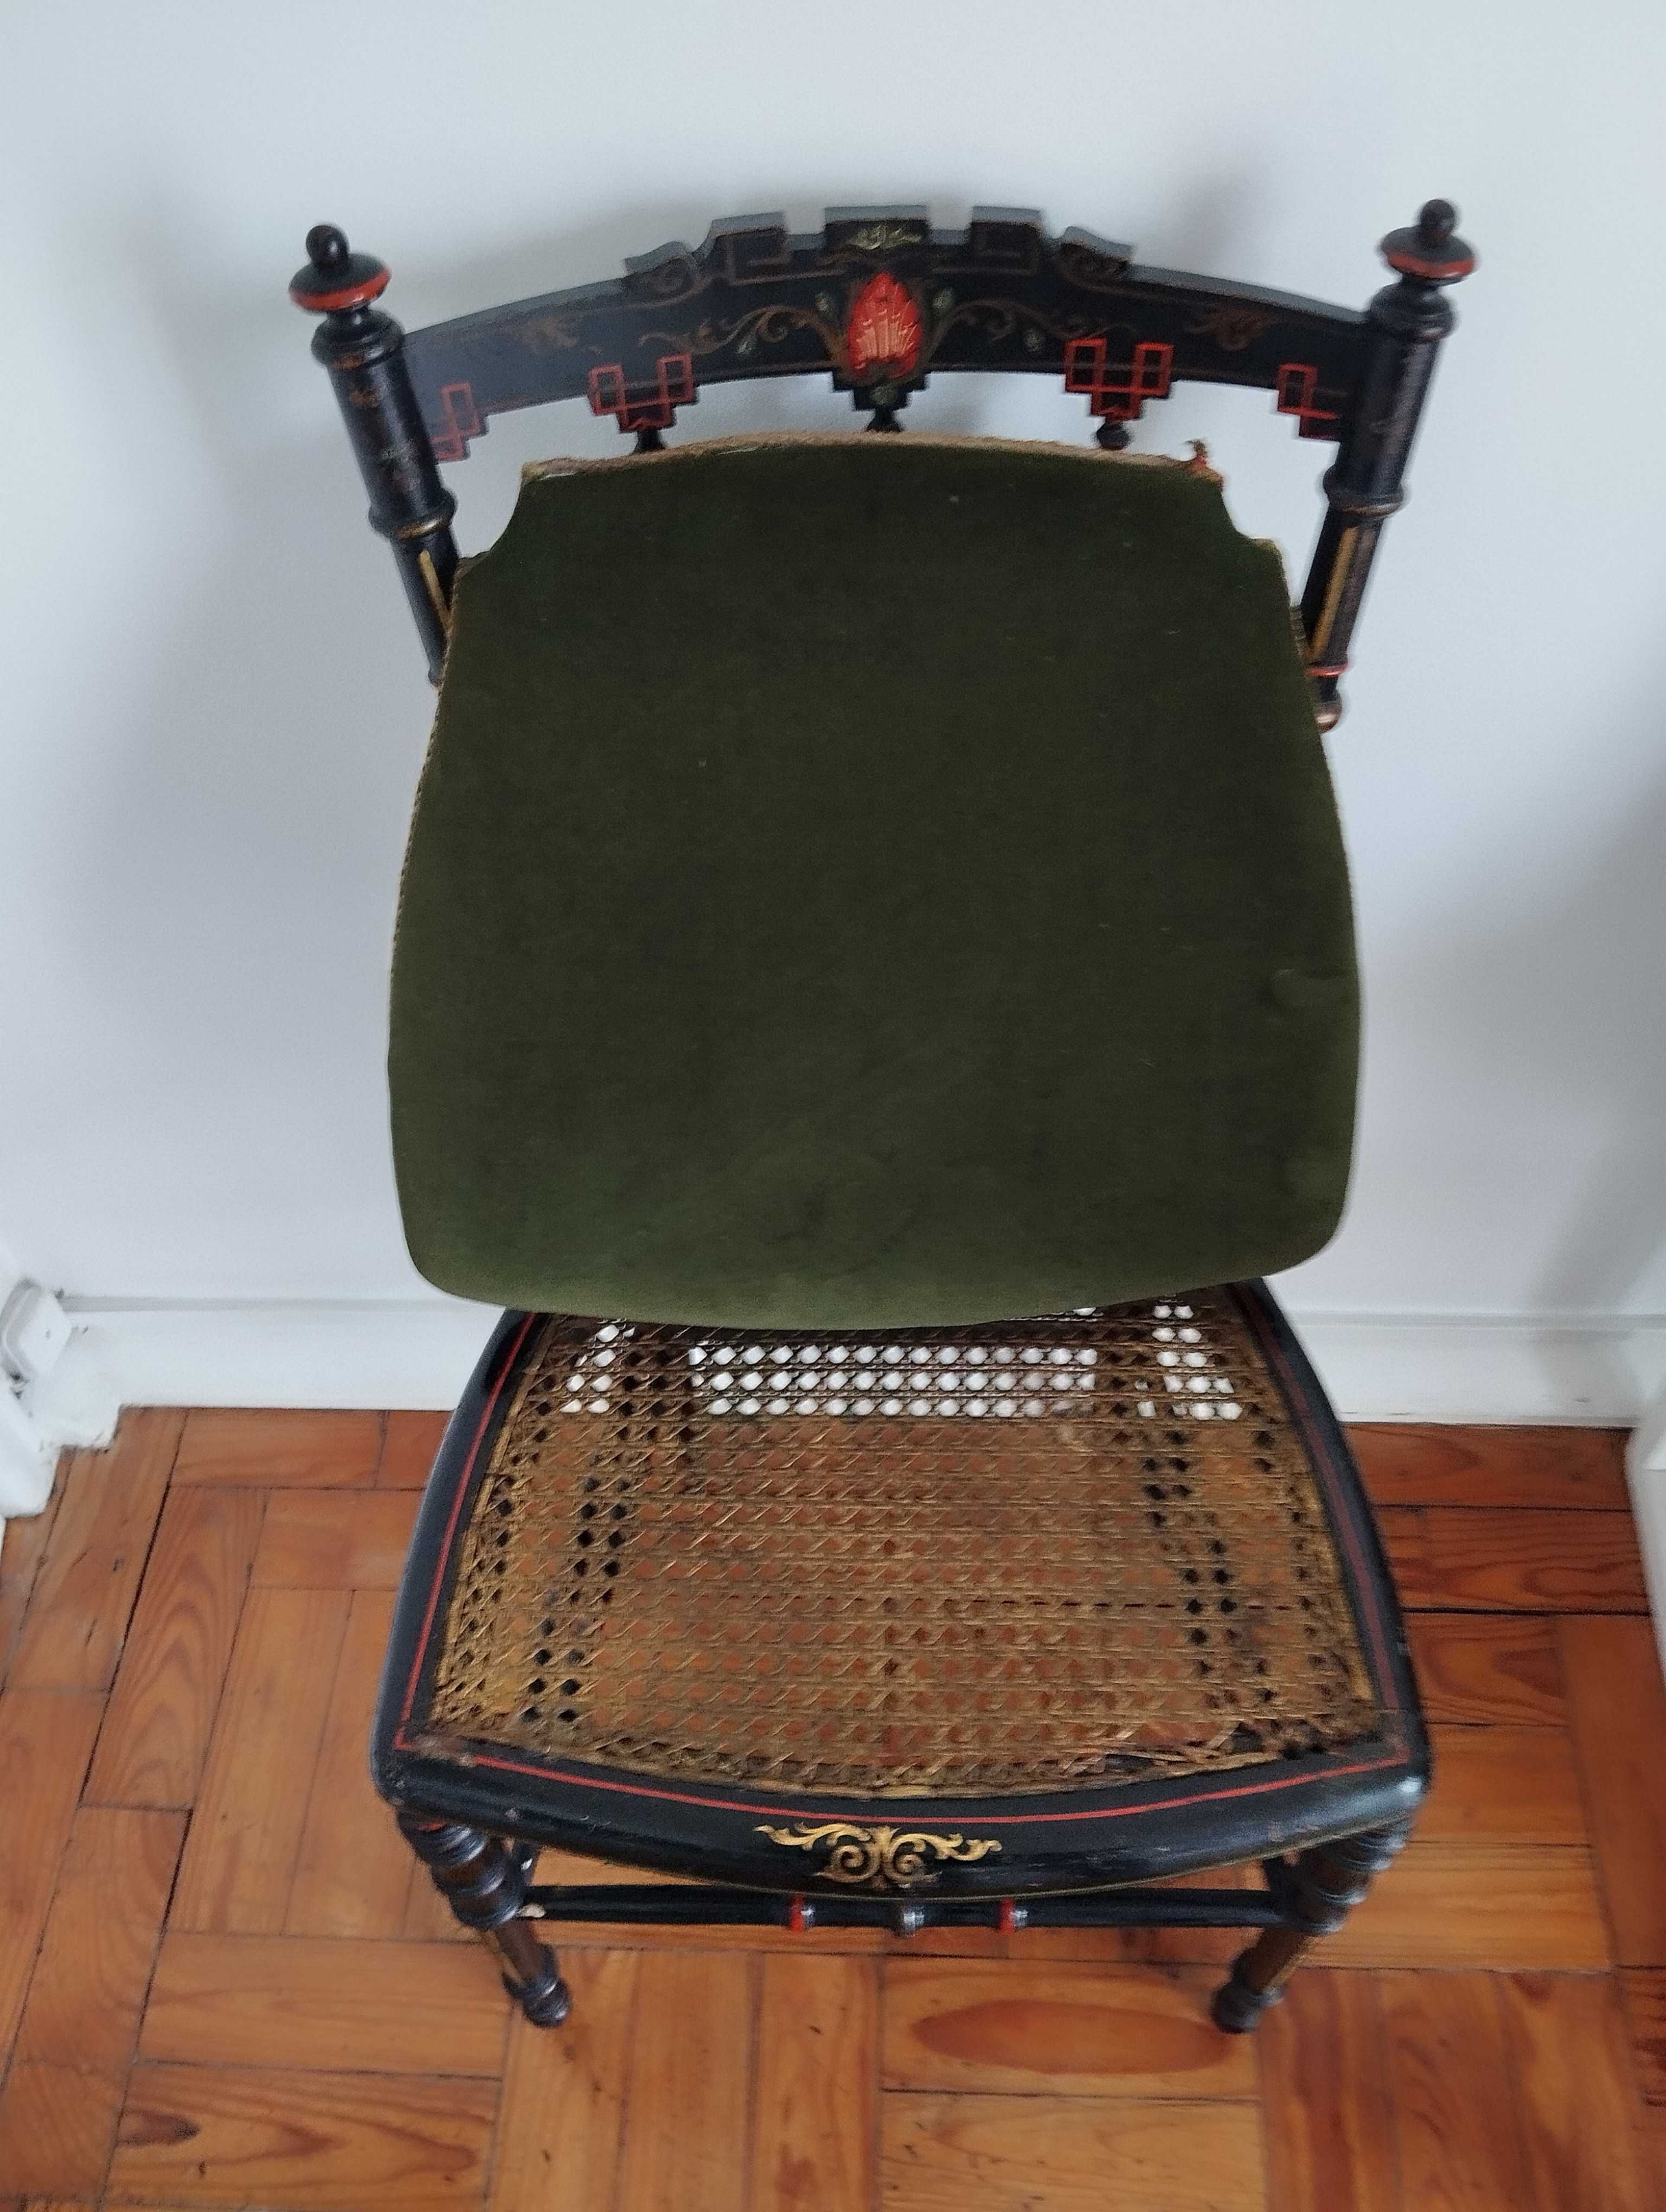 Cadeiras antigas assento palhinha lacadas preto